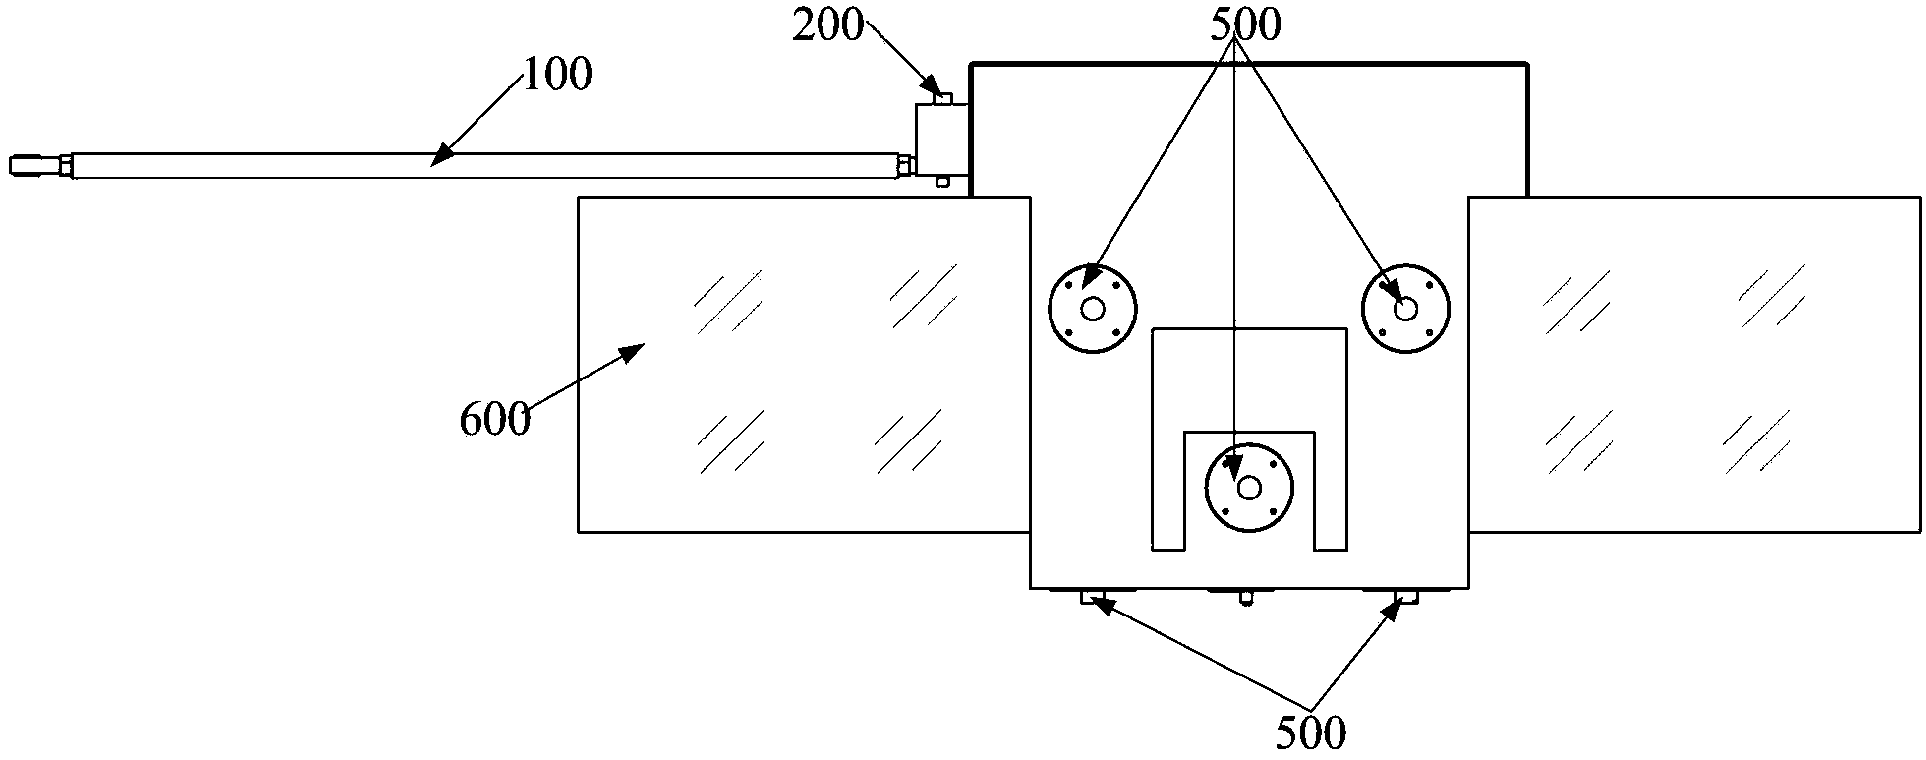 Large-area grating ruling cutter frame system